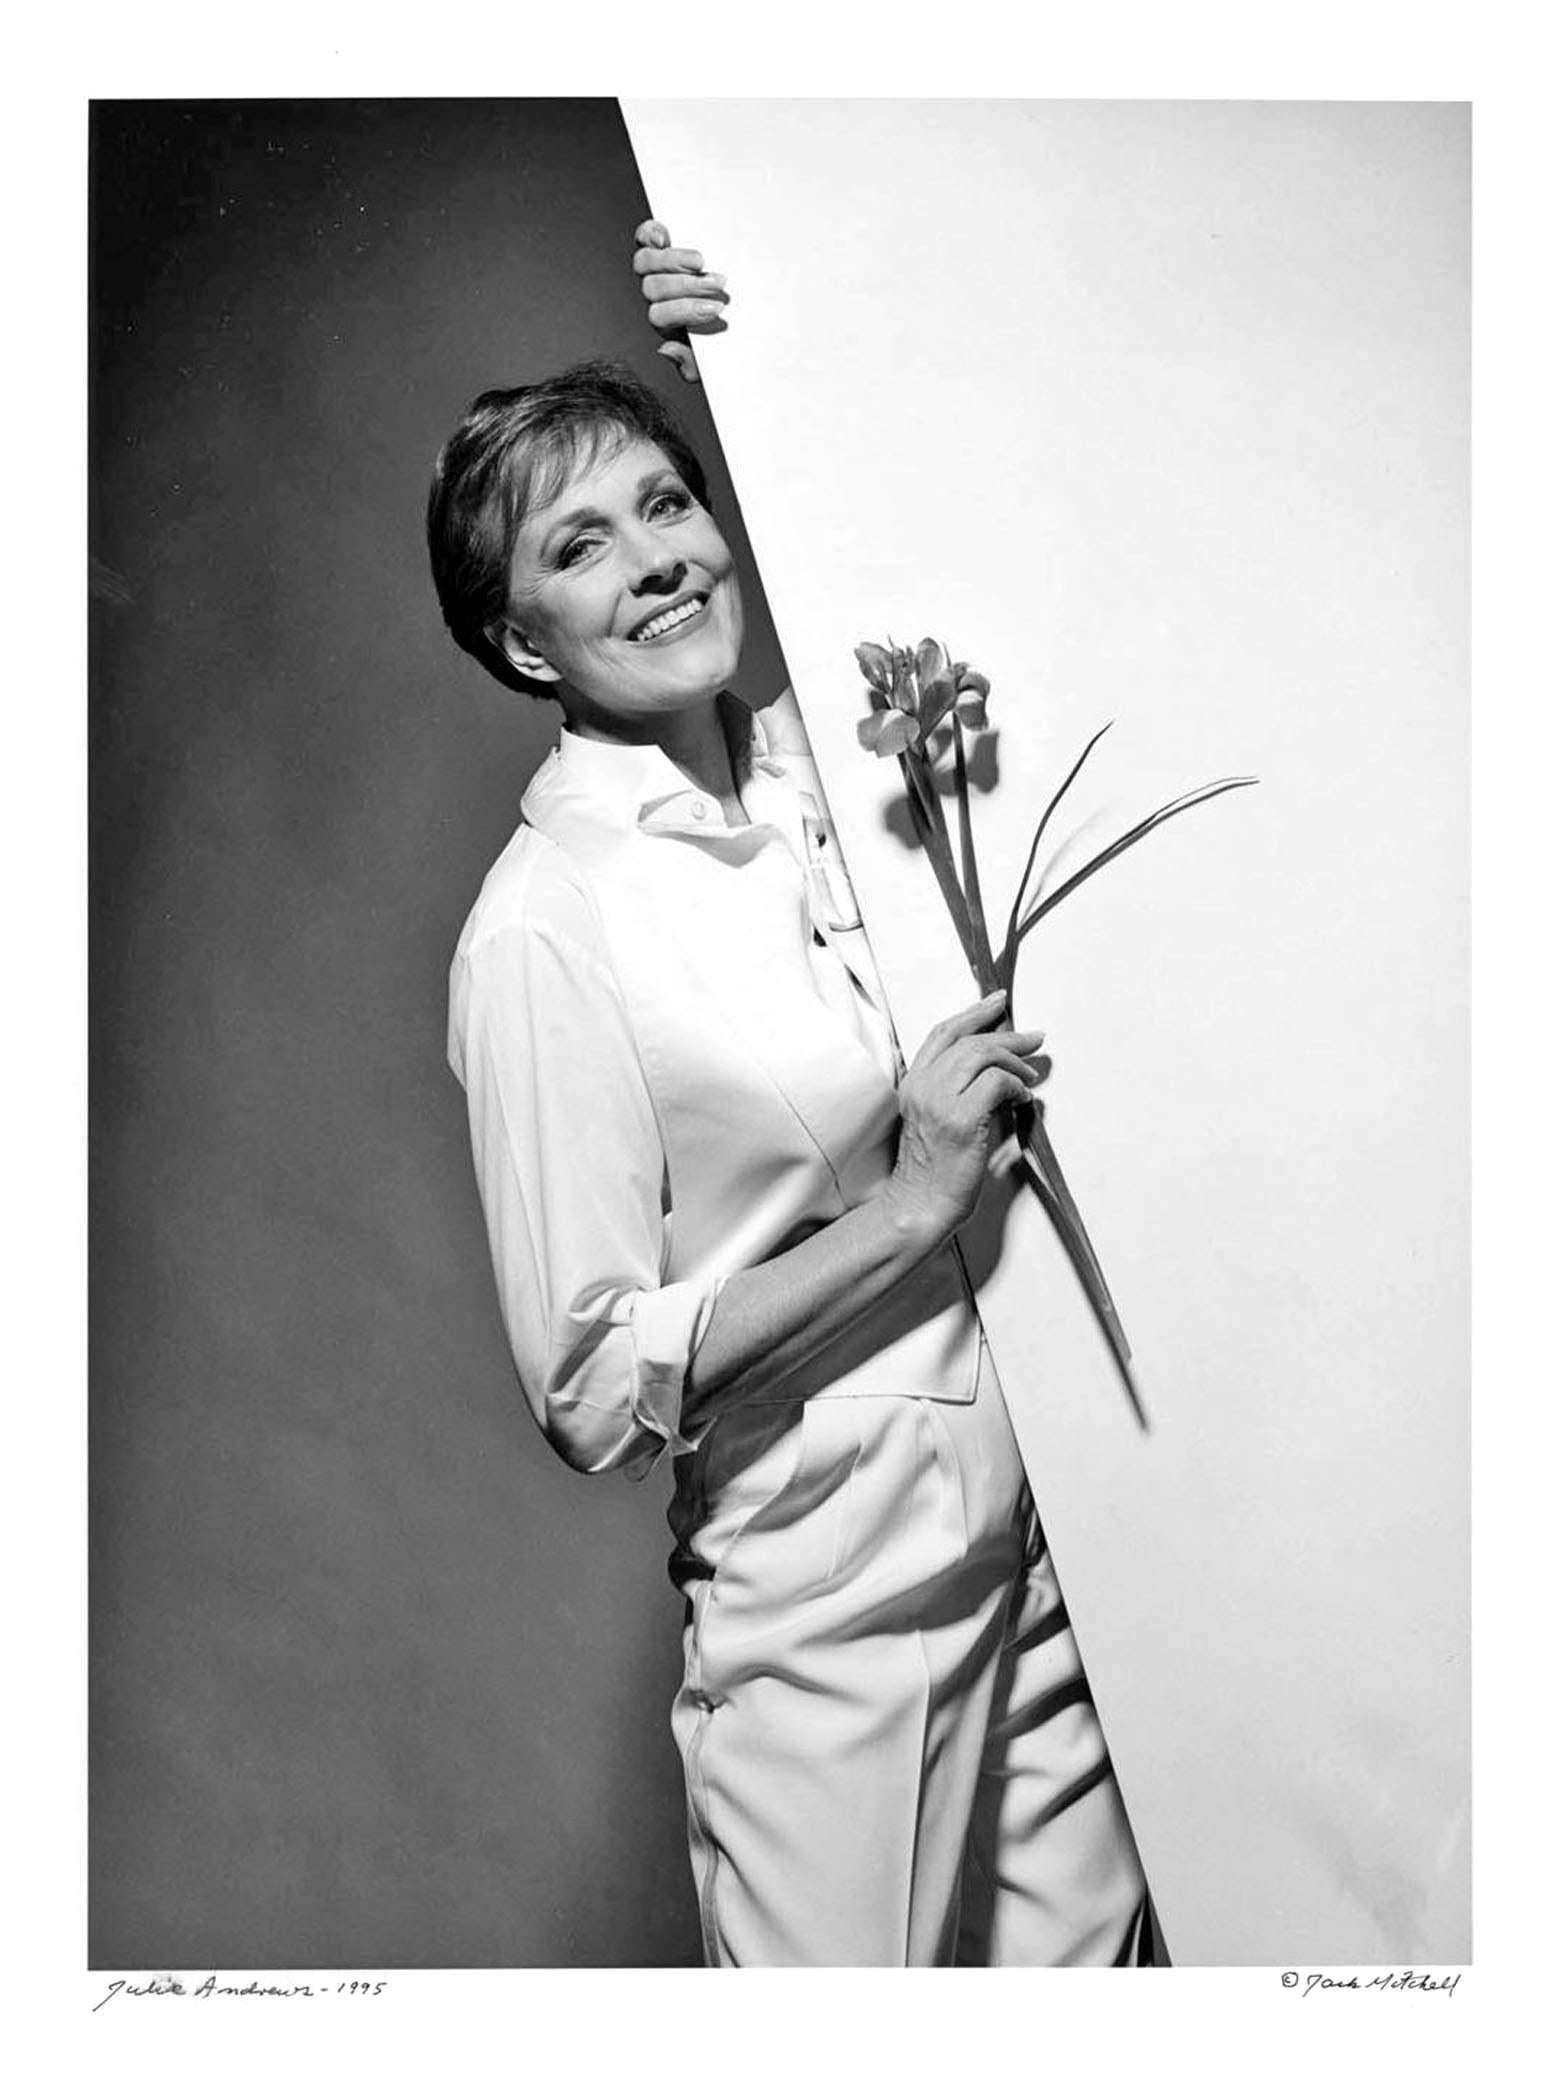 11 x 14" alte Silbergelatinefotografie von Julie Andrews in der Hauptrolle in "Victor Victoria" am Broadway für das Dance Magazine, 1995, signiert von Jack Mitchell auf der Vorderseite.  Kommt direkt aus dem Jack Mitchell Archiv mit einem